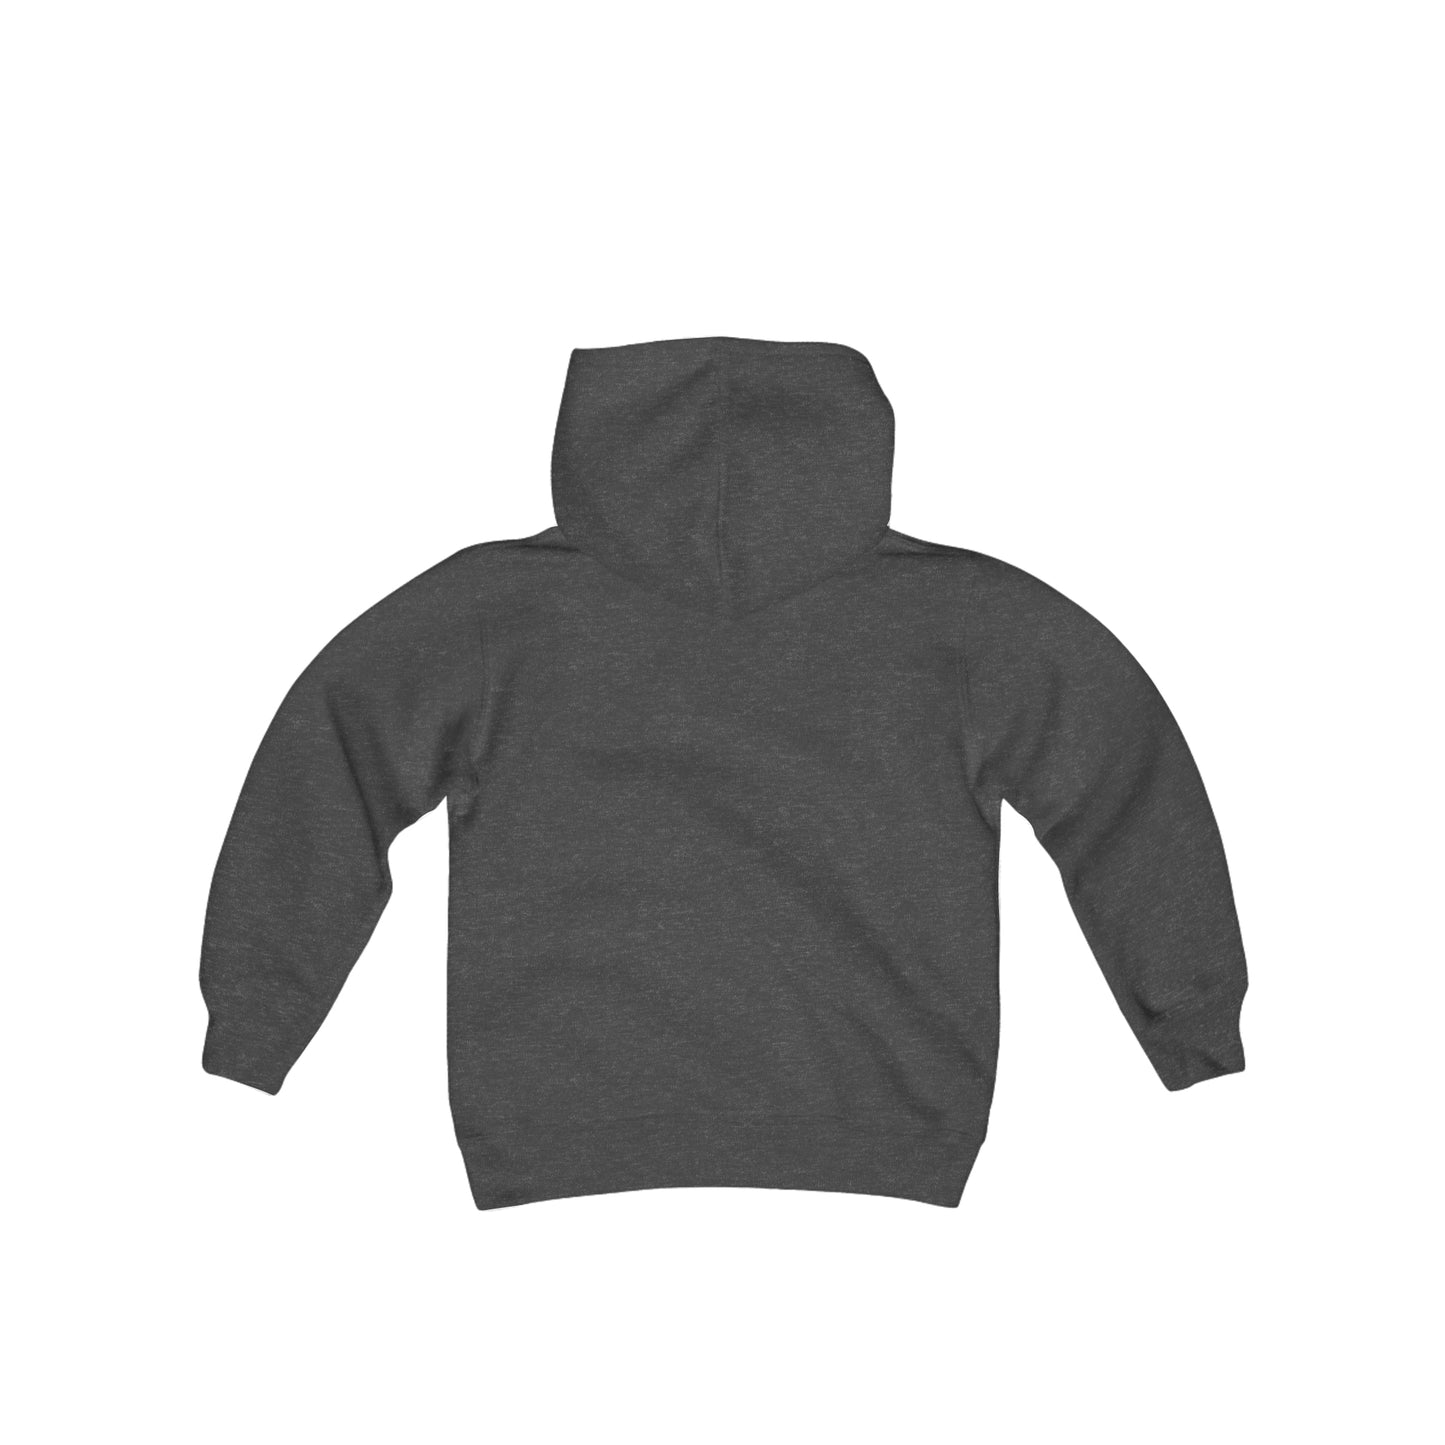 Little Tracker® Elephant Youth Heavy Blend Hooded Sweatshirt